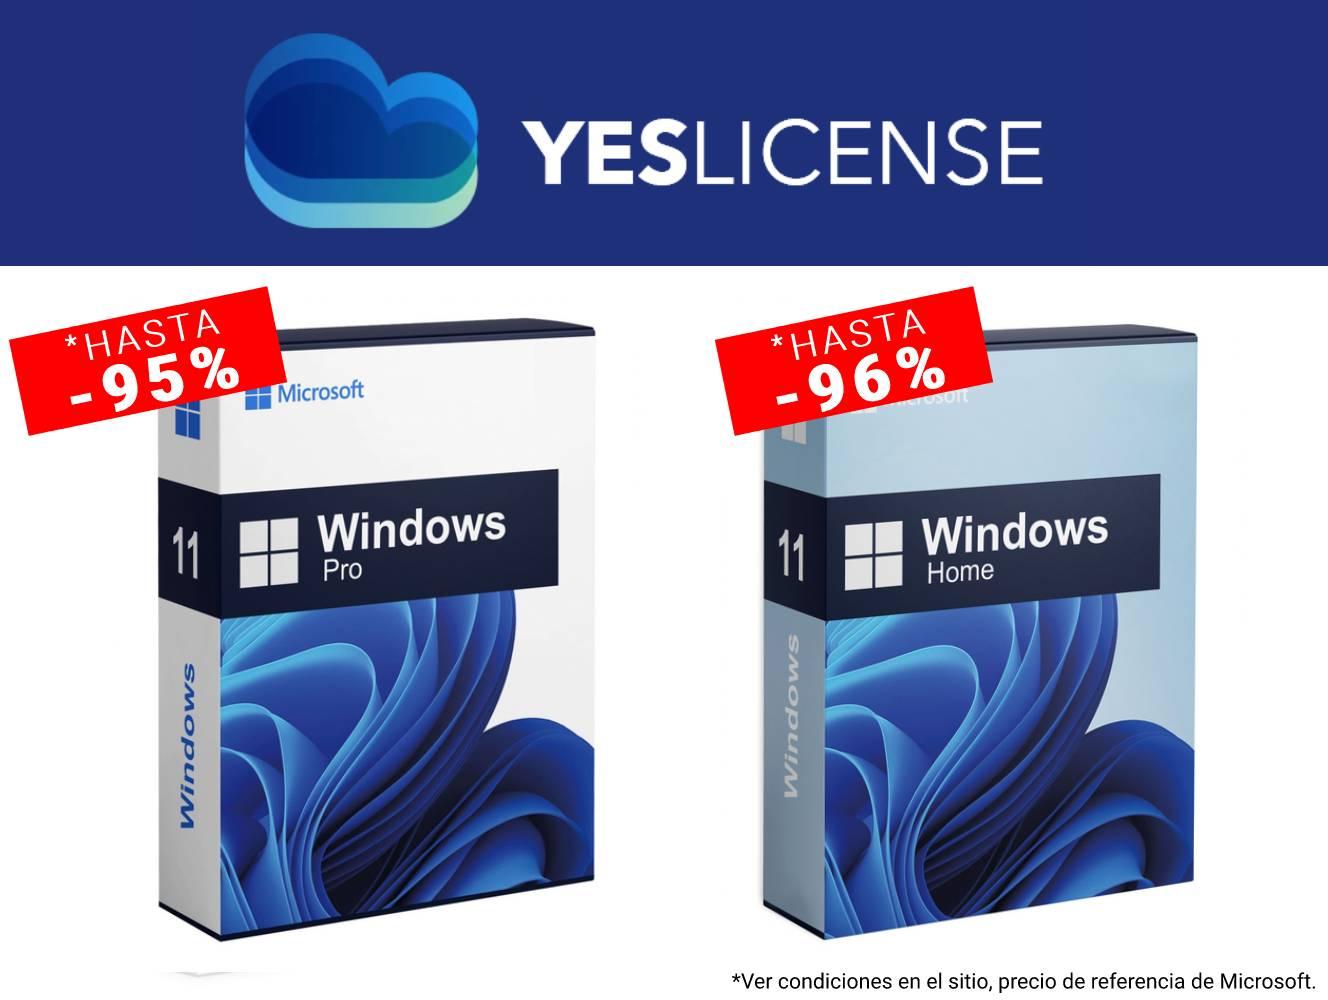 Oferta para comprar licencia de Windows 11